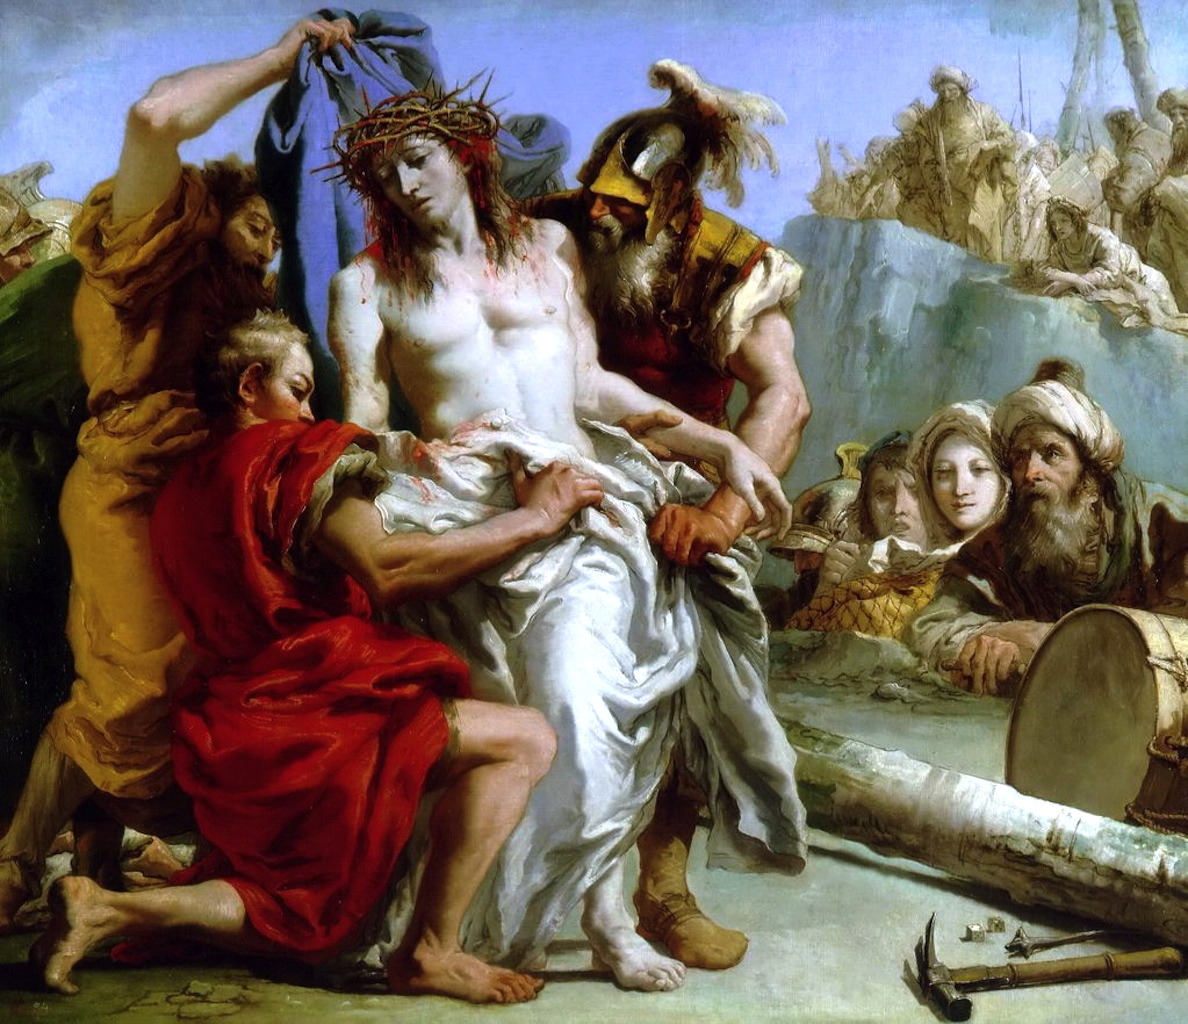 Giovanni Domenico Tiepolo, The Disrobing of Christ, 1772